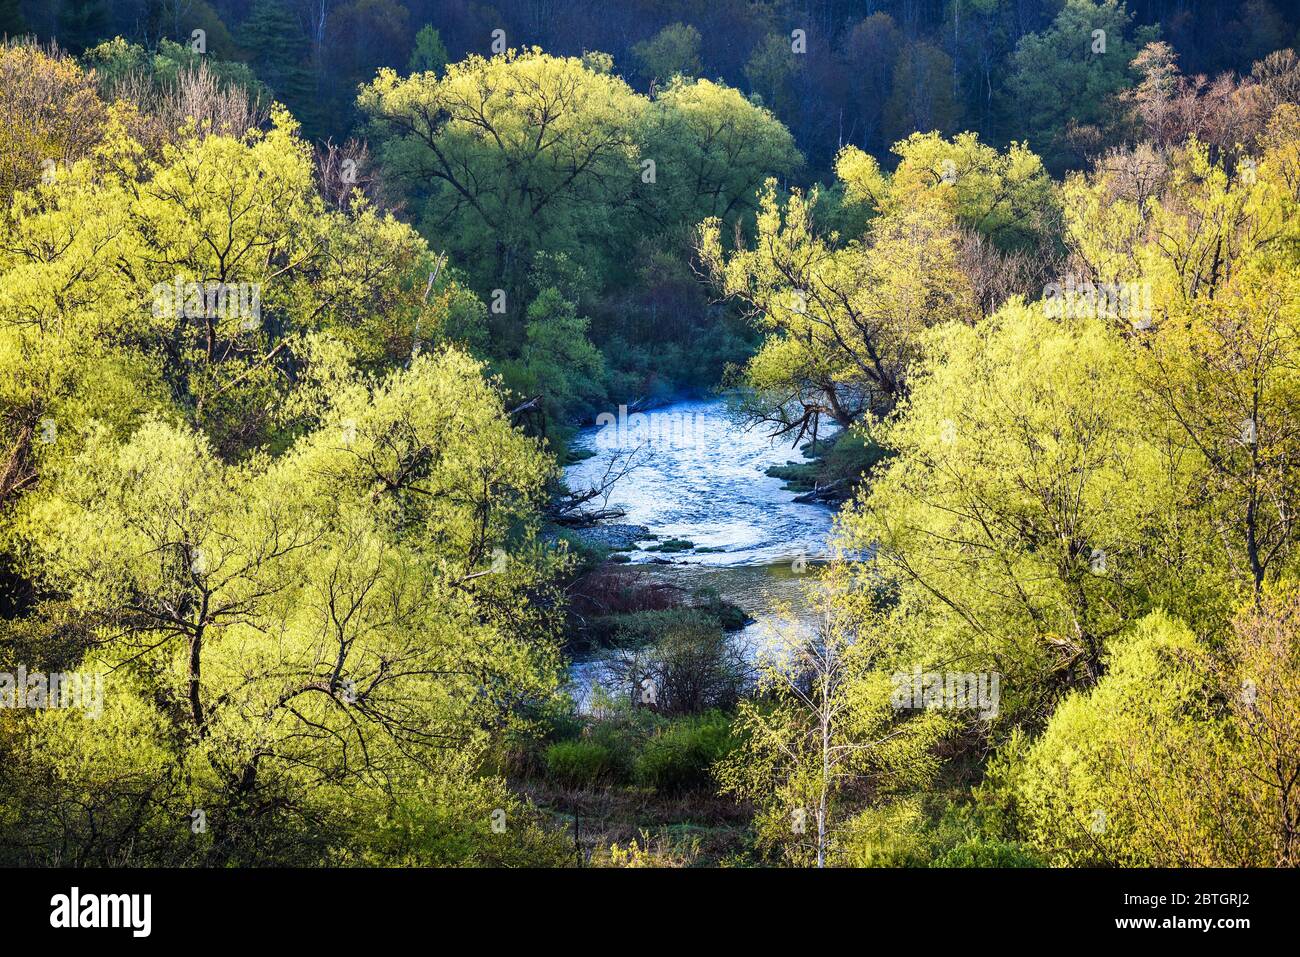 La primavera arriva al paesaggio rurale dello stato del Vermont, New England, USA, ramo settentrionale del fiume Winooski. Foto Stock